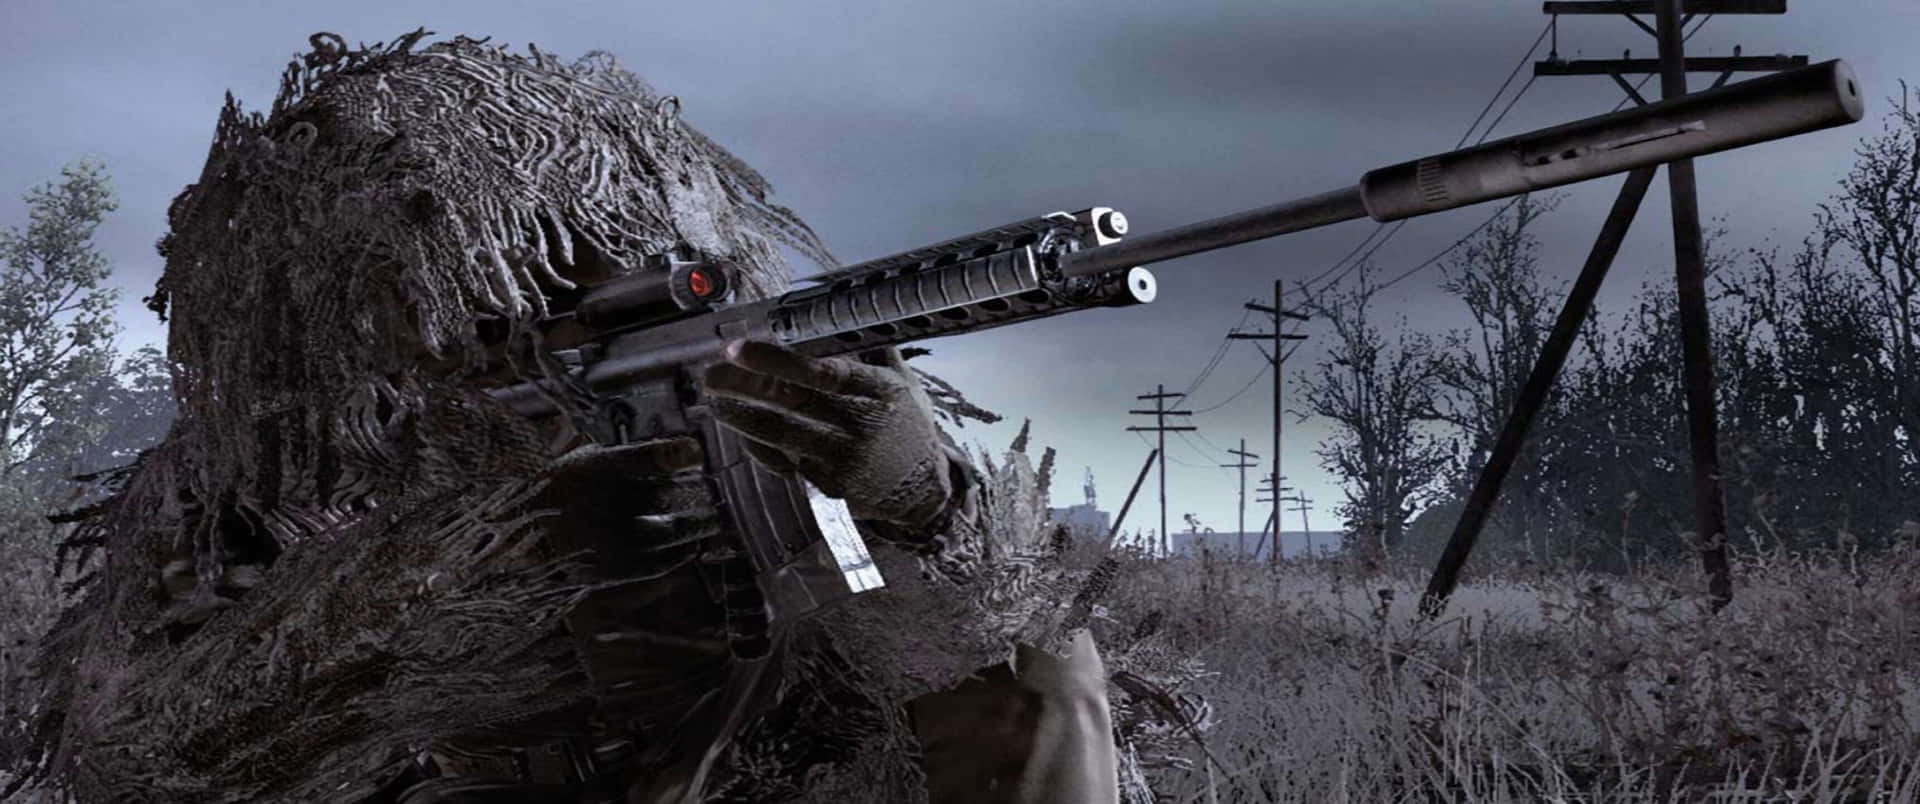 Soldatoin Mimetica 3440x1440p Sfondo Di Call Of Duty Modern Warfare